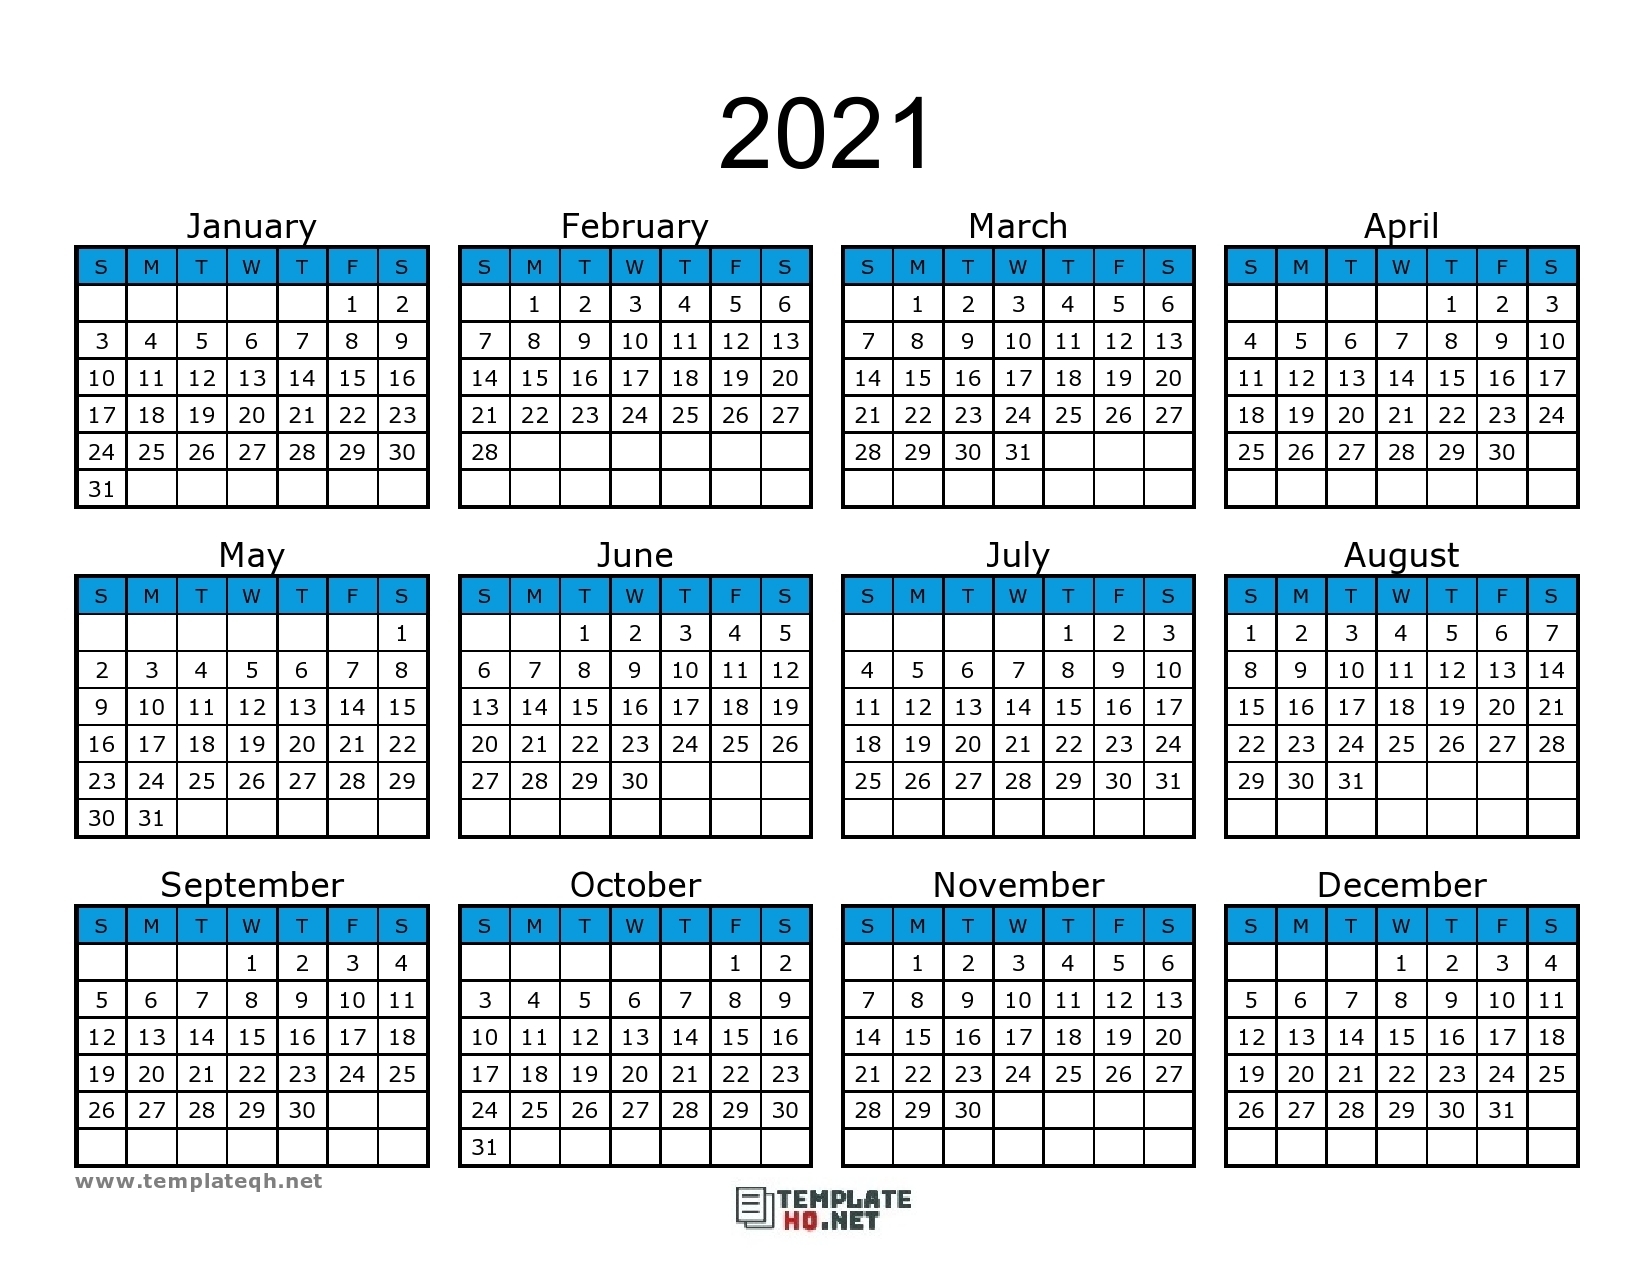 Получить номер недели. Календарь с номерами недель. Календарь 2021. Номера недель 2021. Календарь с номерами недель 2021.